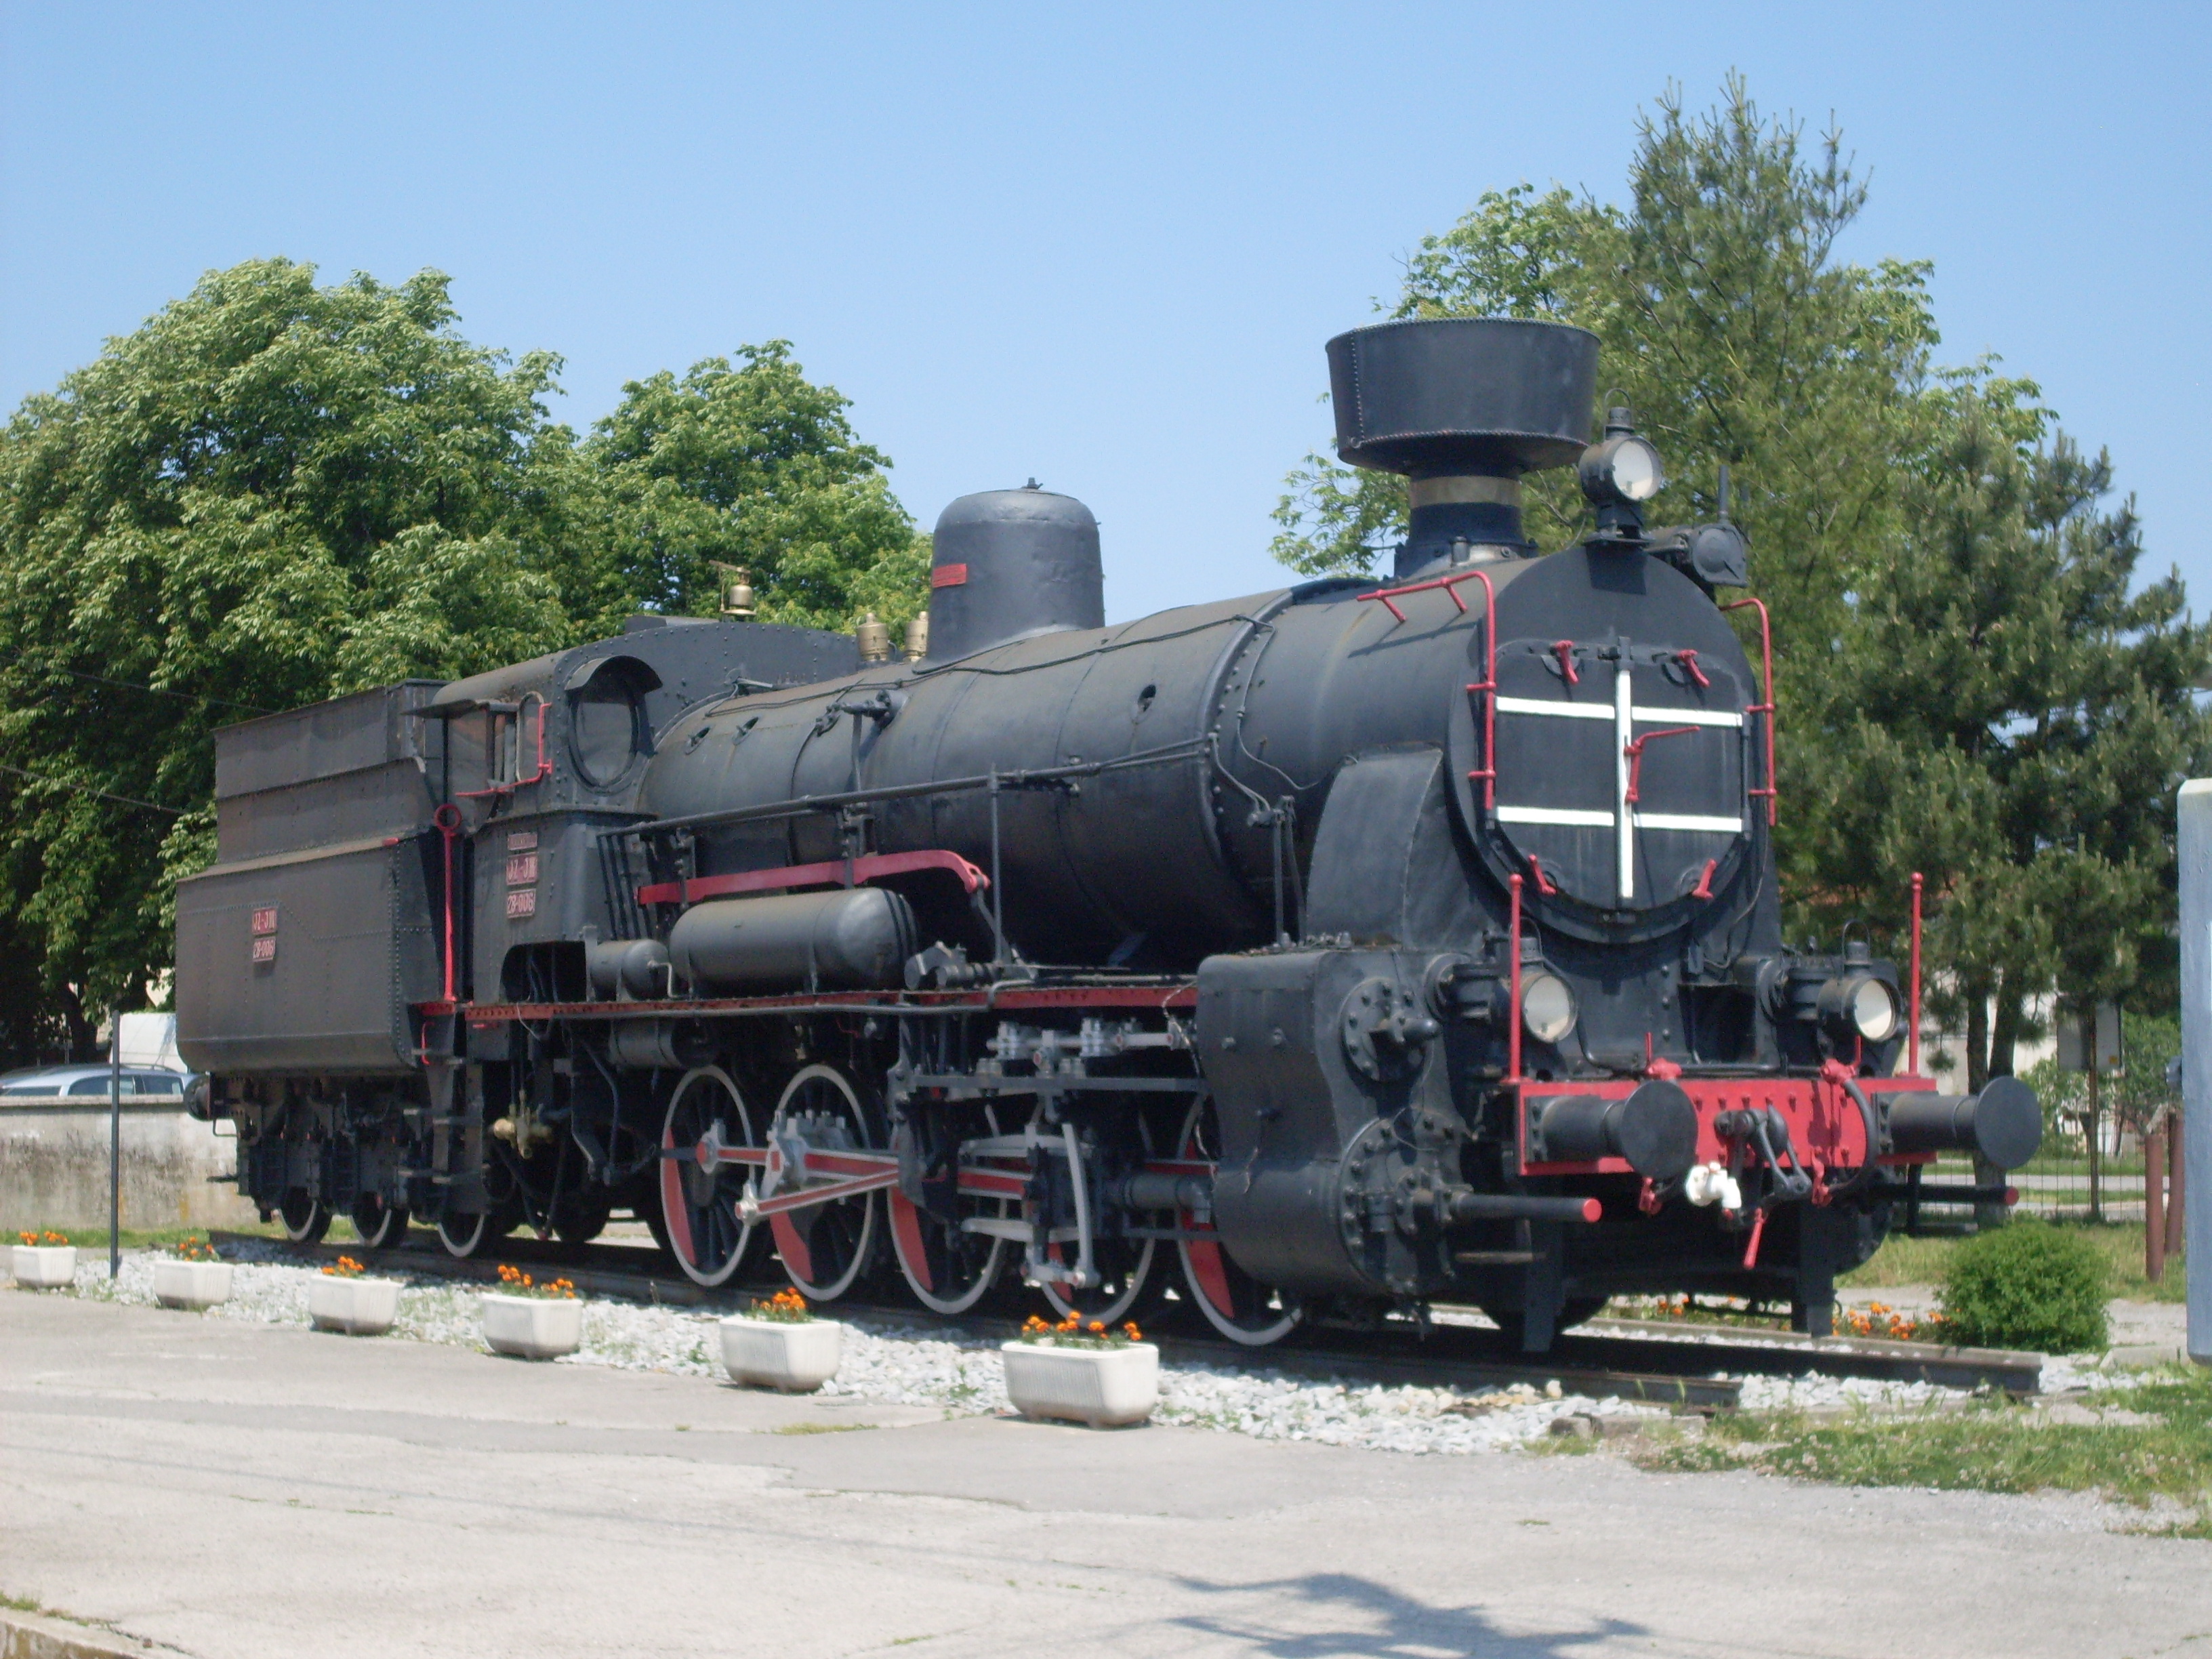 Divaca_train_station-steam_locomotive_JZ_28-006.jpg